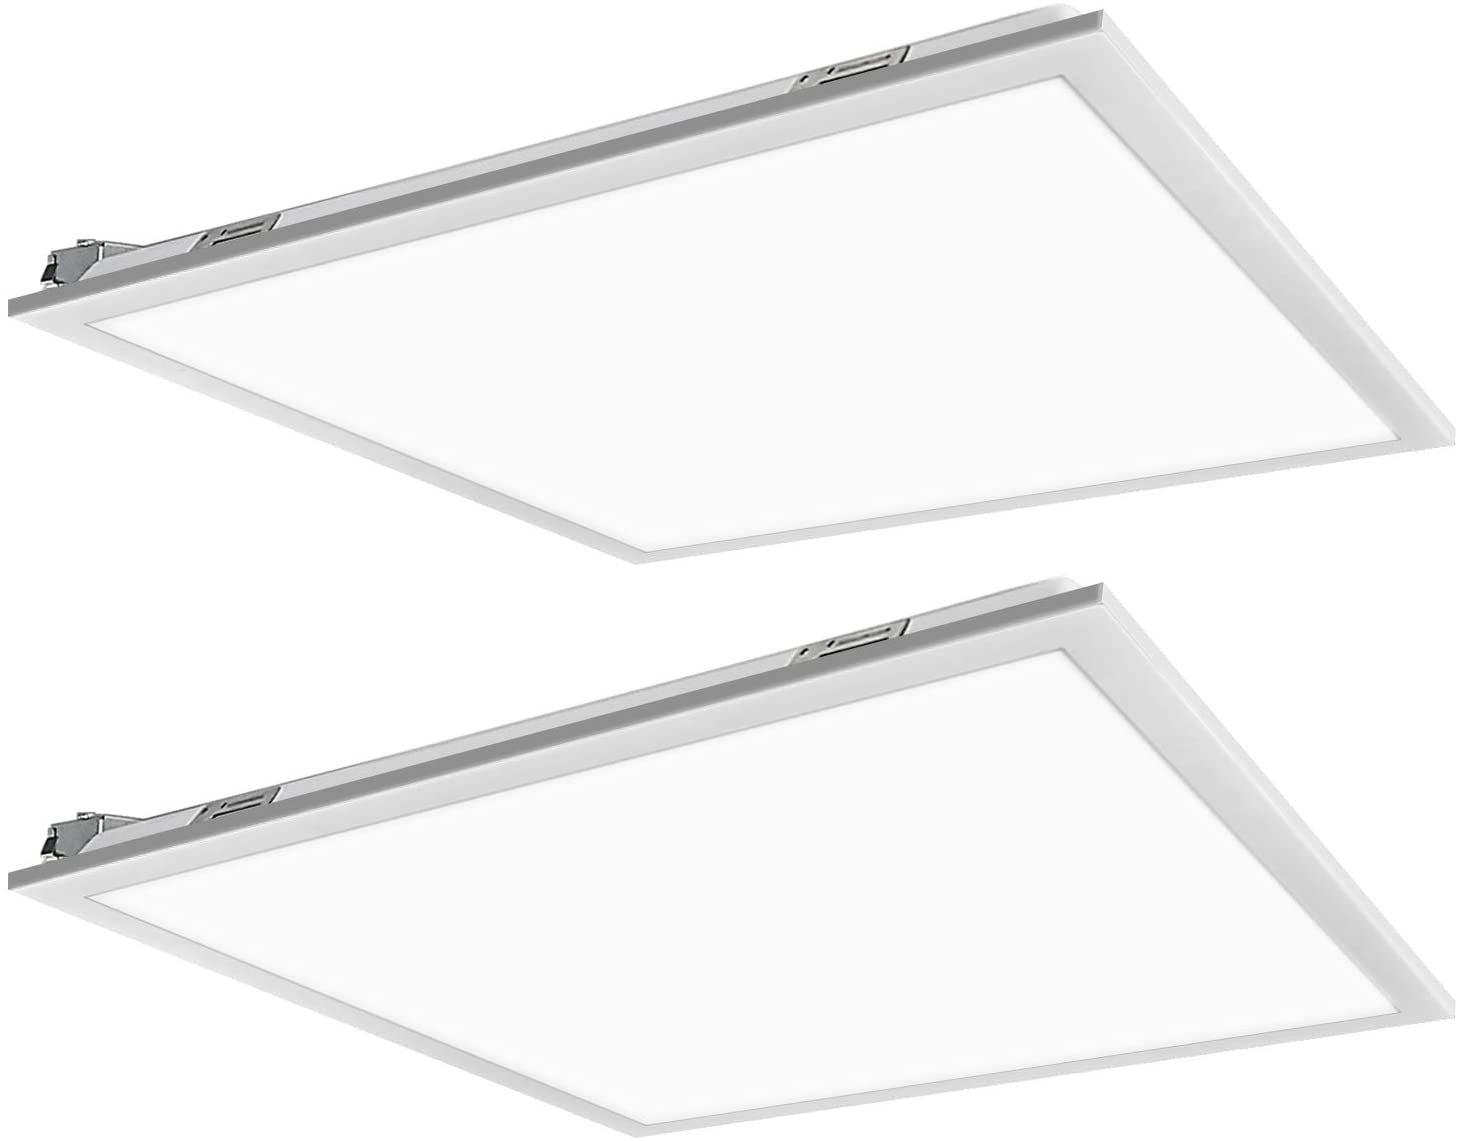 Details about   2X4 FT 2X2 FT LED Back Lit Flat Panel Recessed Lighting Drop Ceiling Lights 110V 